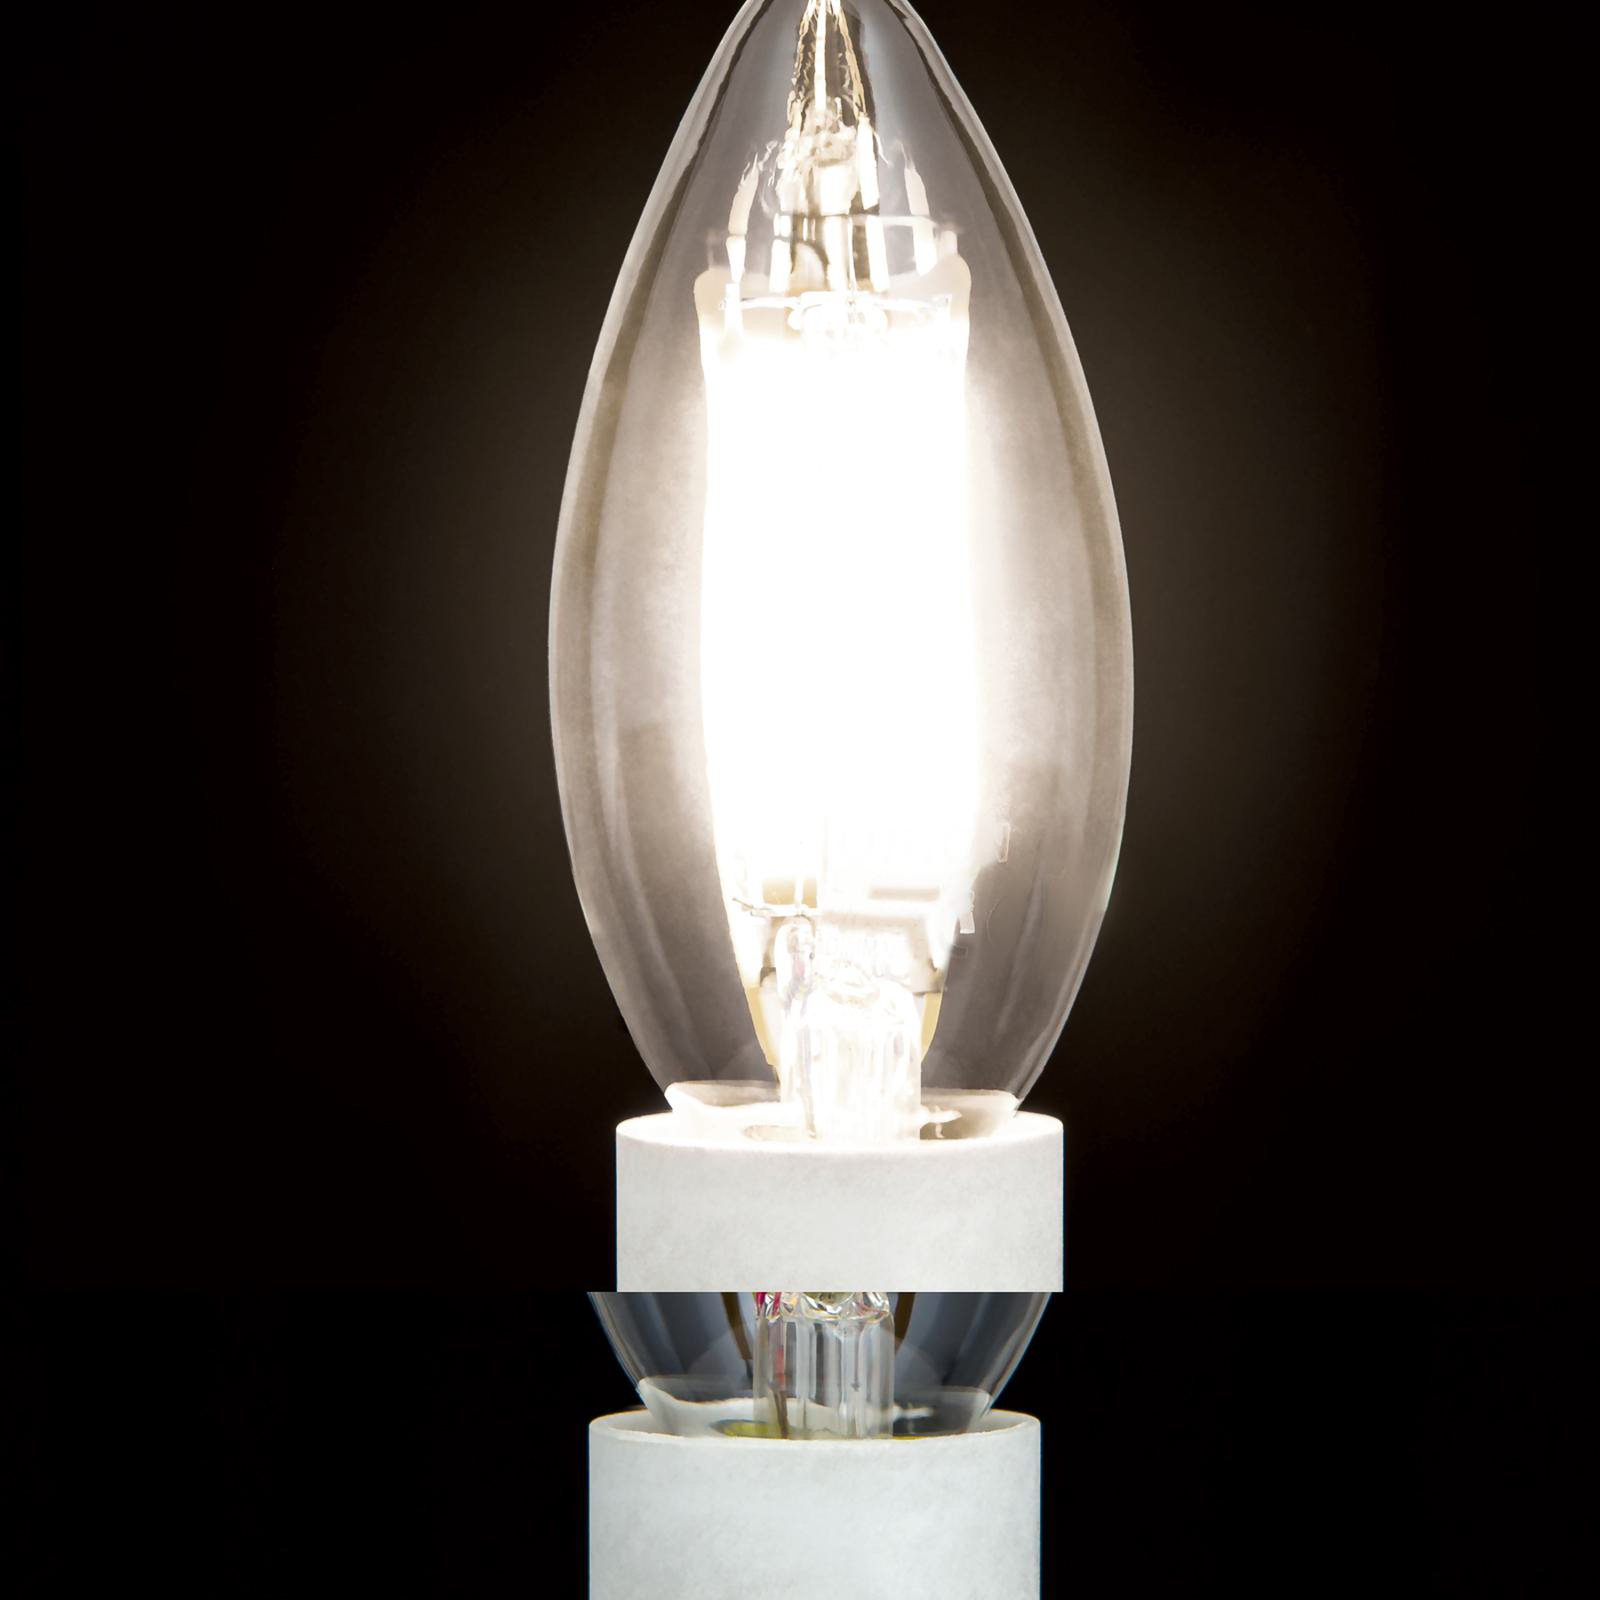 Ampoule LED filament E14 C35 claire 6W 827 720lm à intensité variable